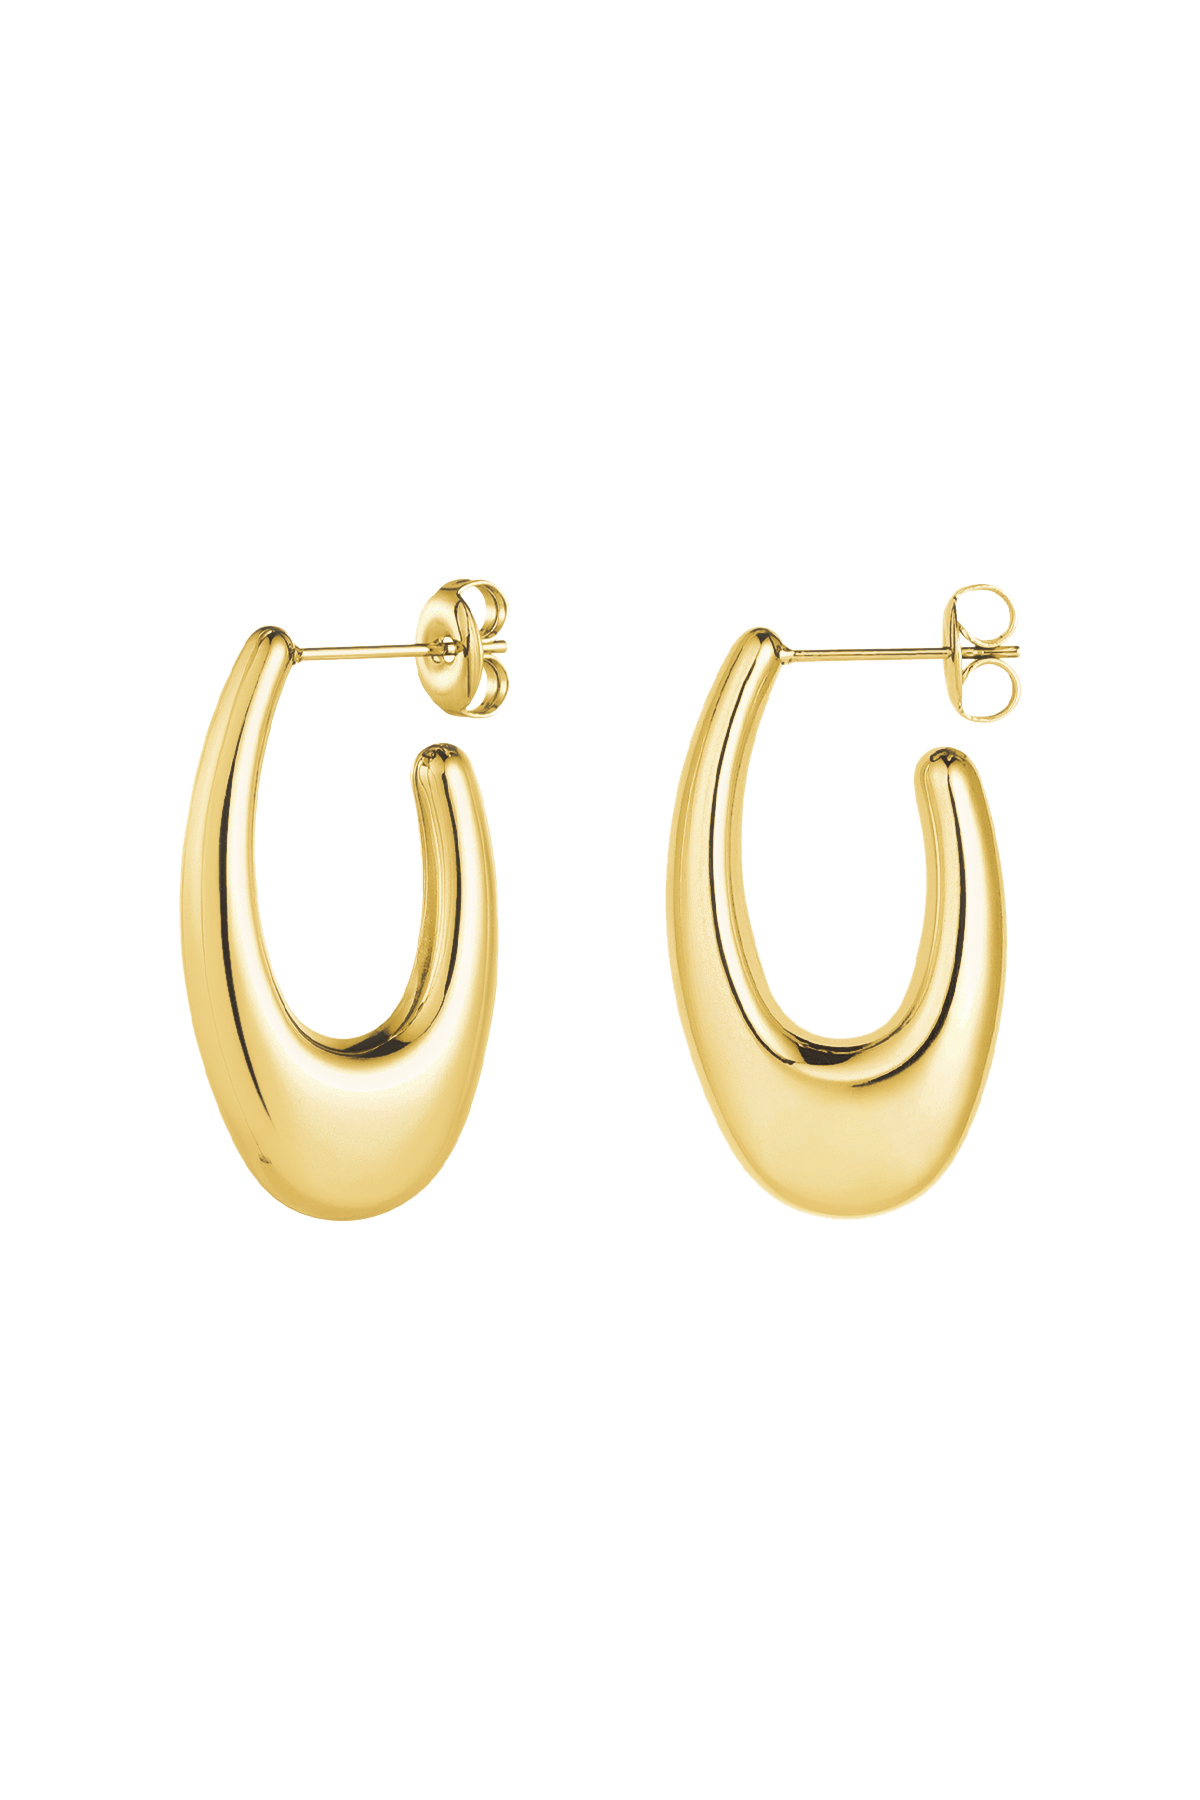 Earrings aesthetic - gold h5 